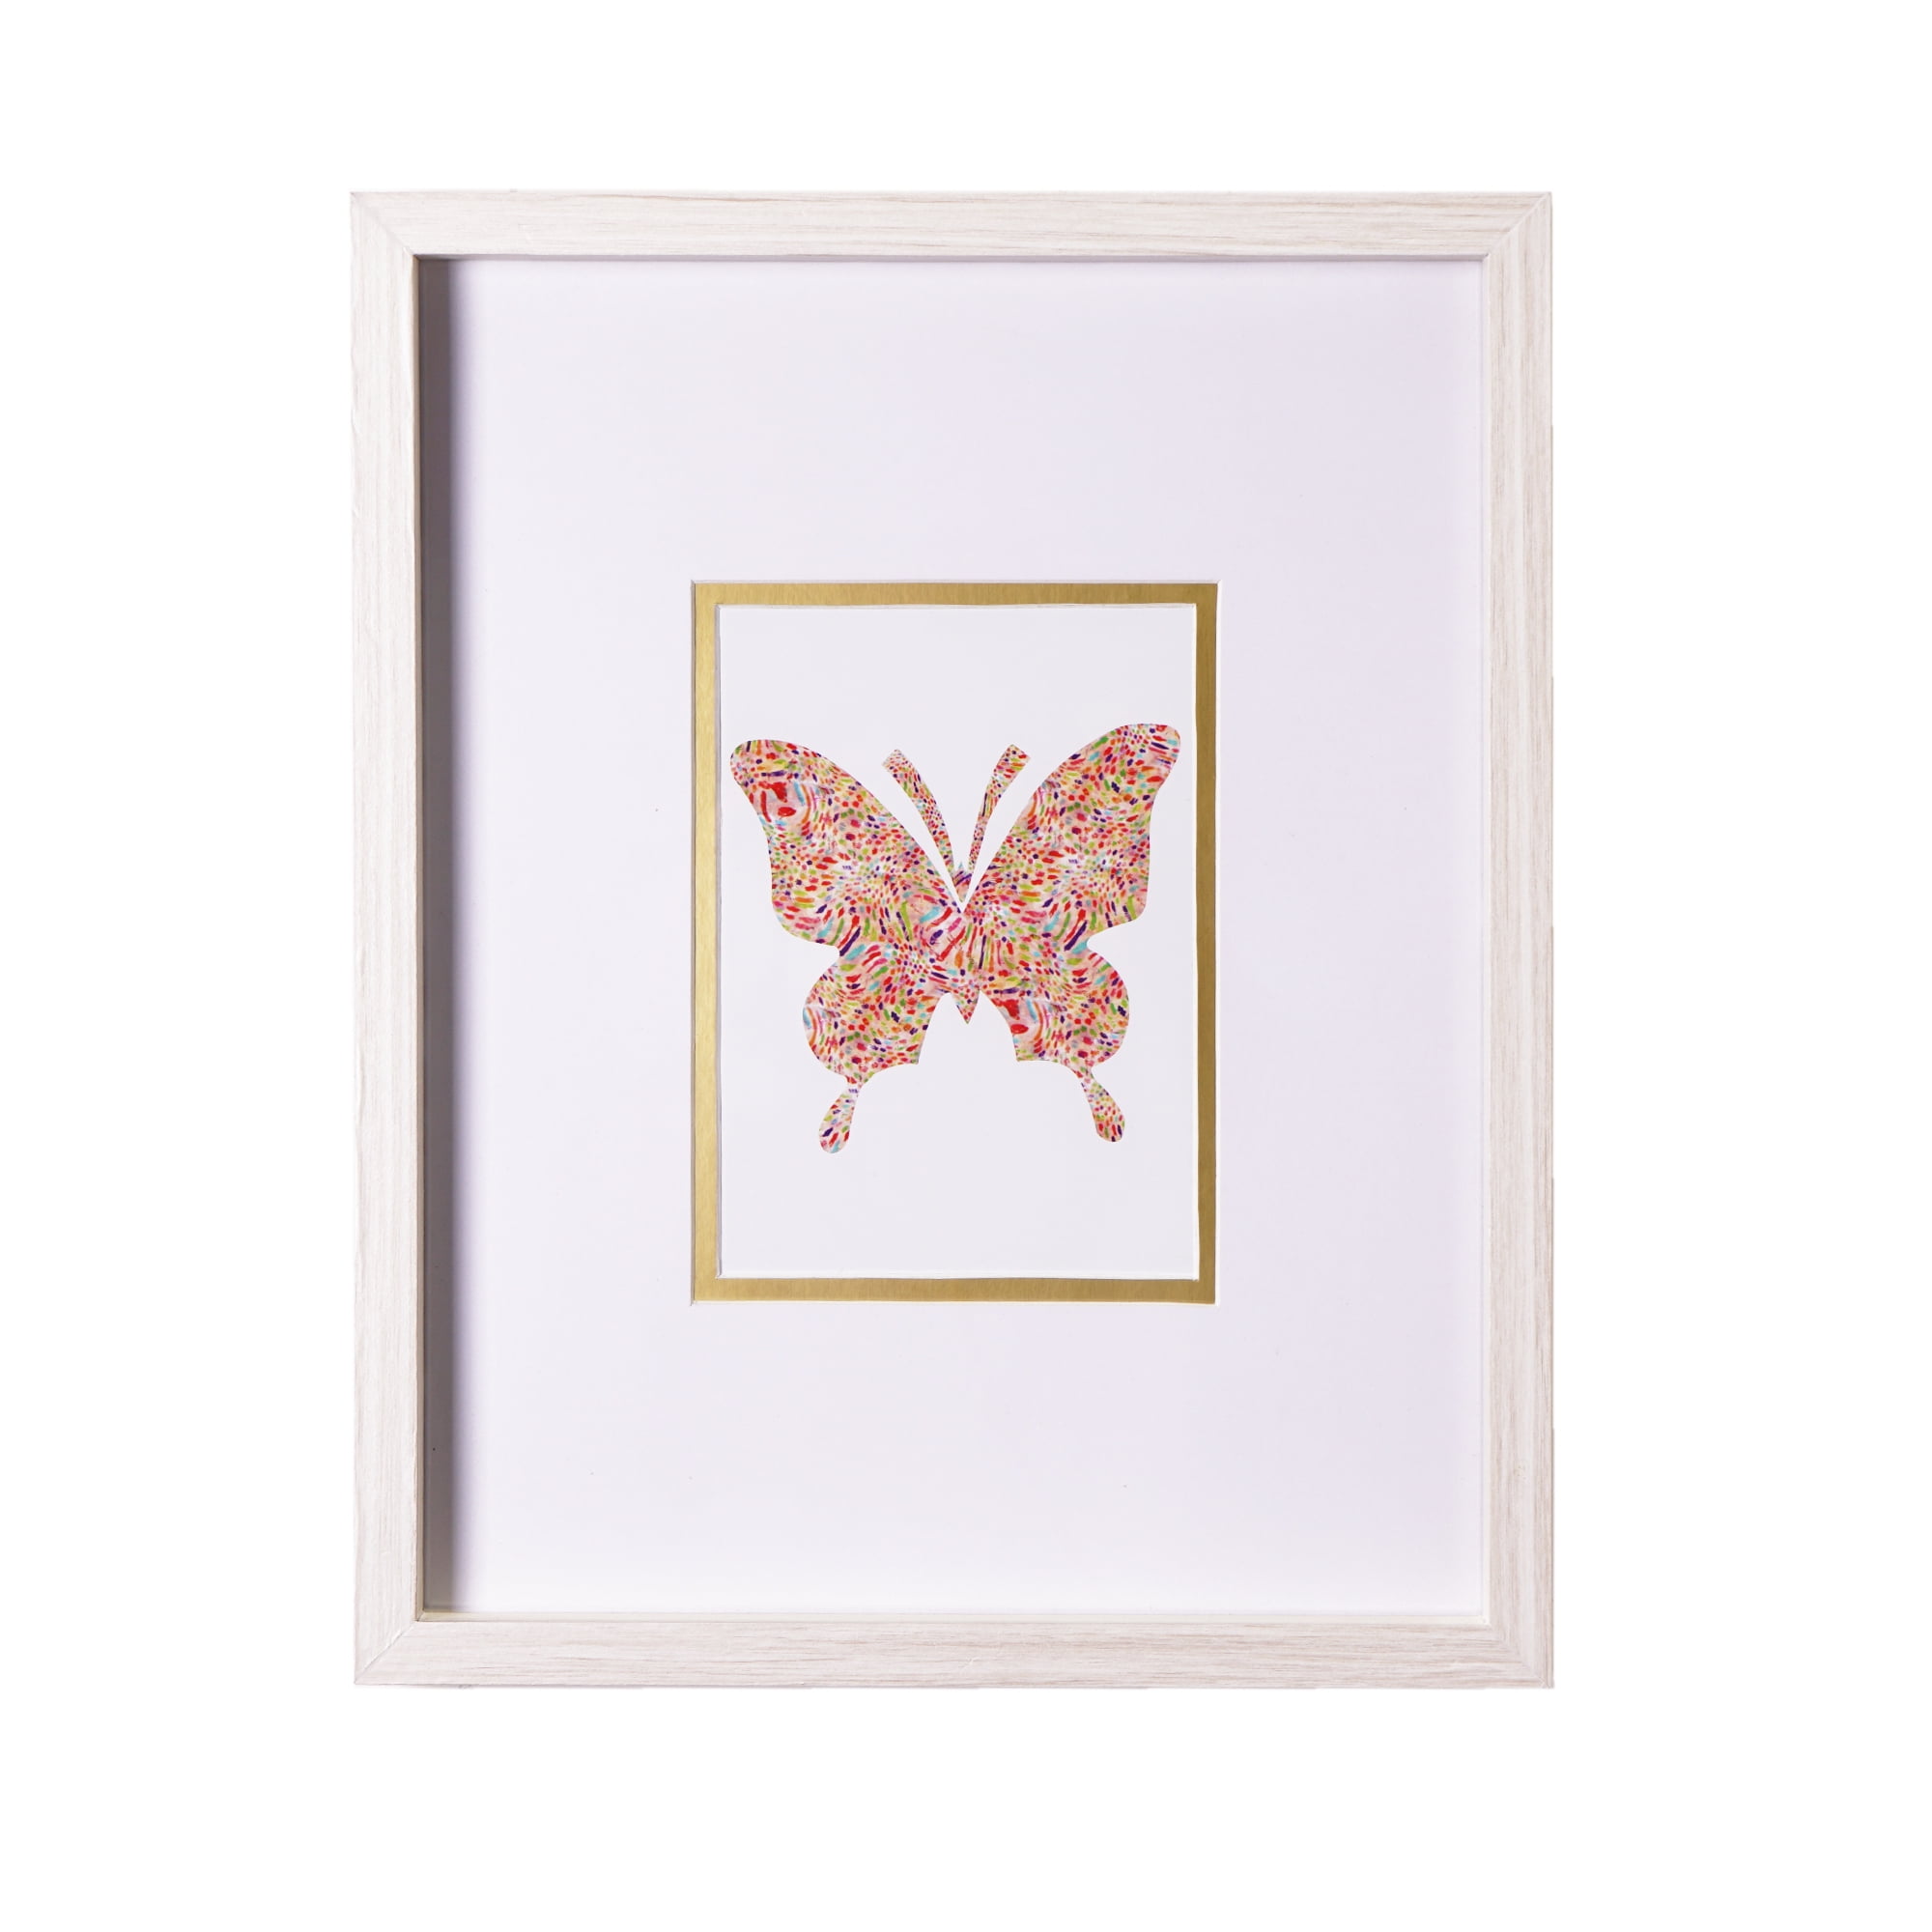 Framed Paper Butterflies Dollhouse Miniature Artwork 